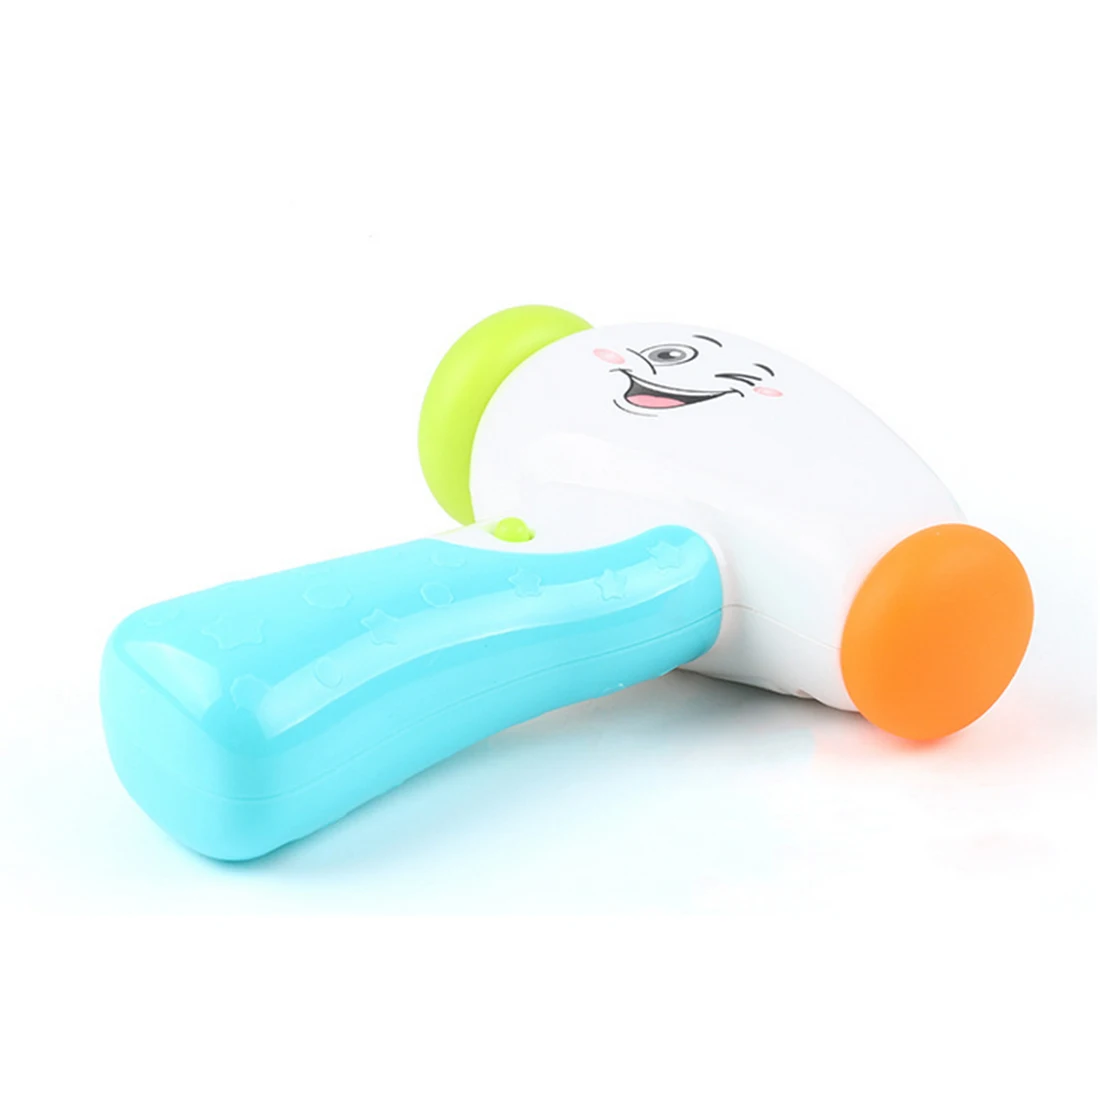 Surwish 2018 Новый Прочный музыкальный молоток малыш звук образовательные игрушки для детей Музыкальные игрушки для младенцев